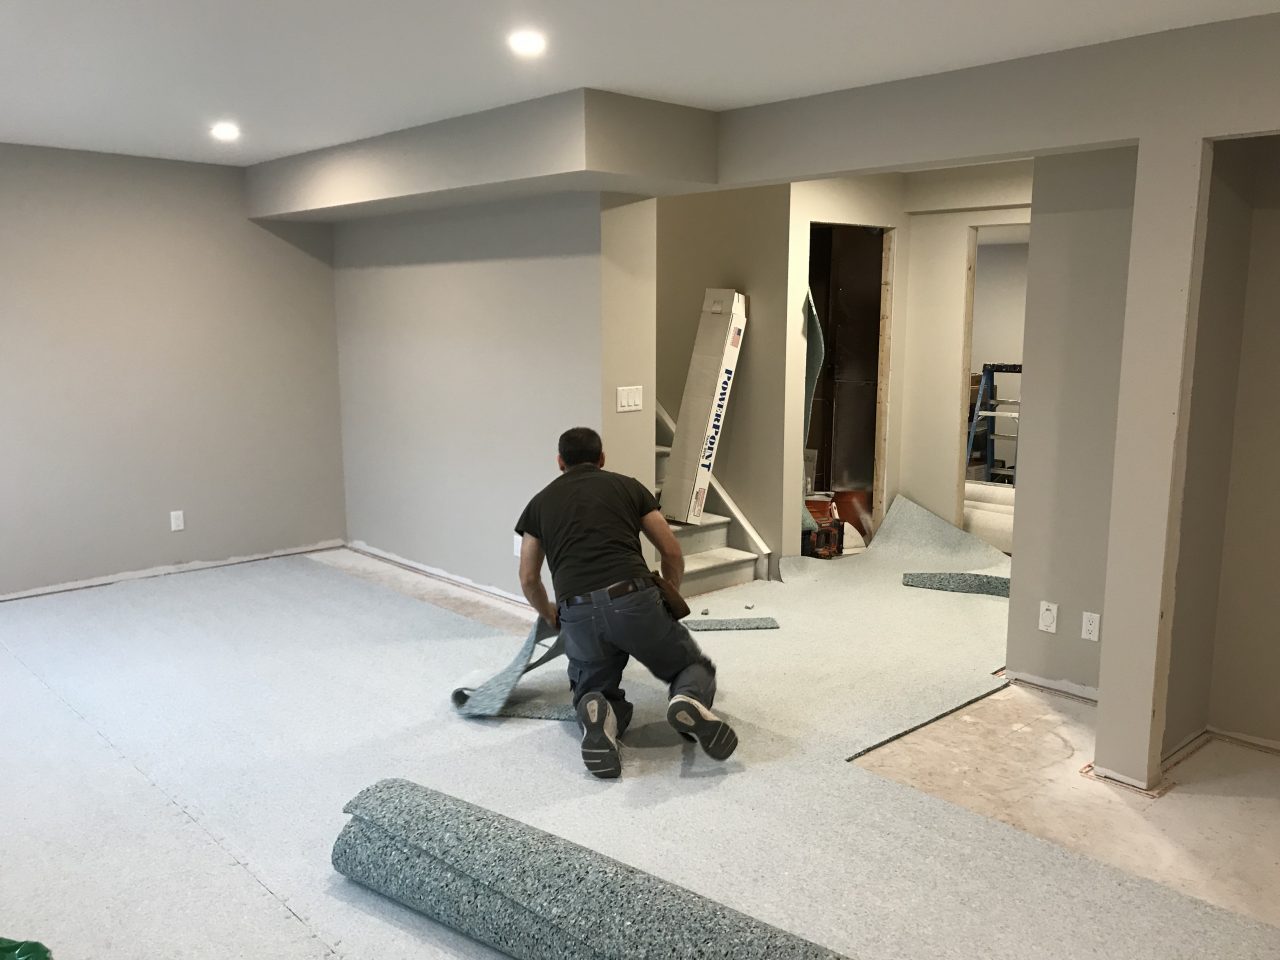 carpet-installation